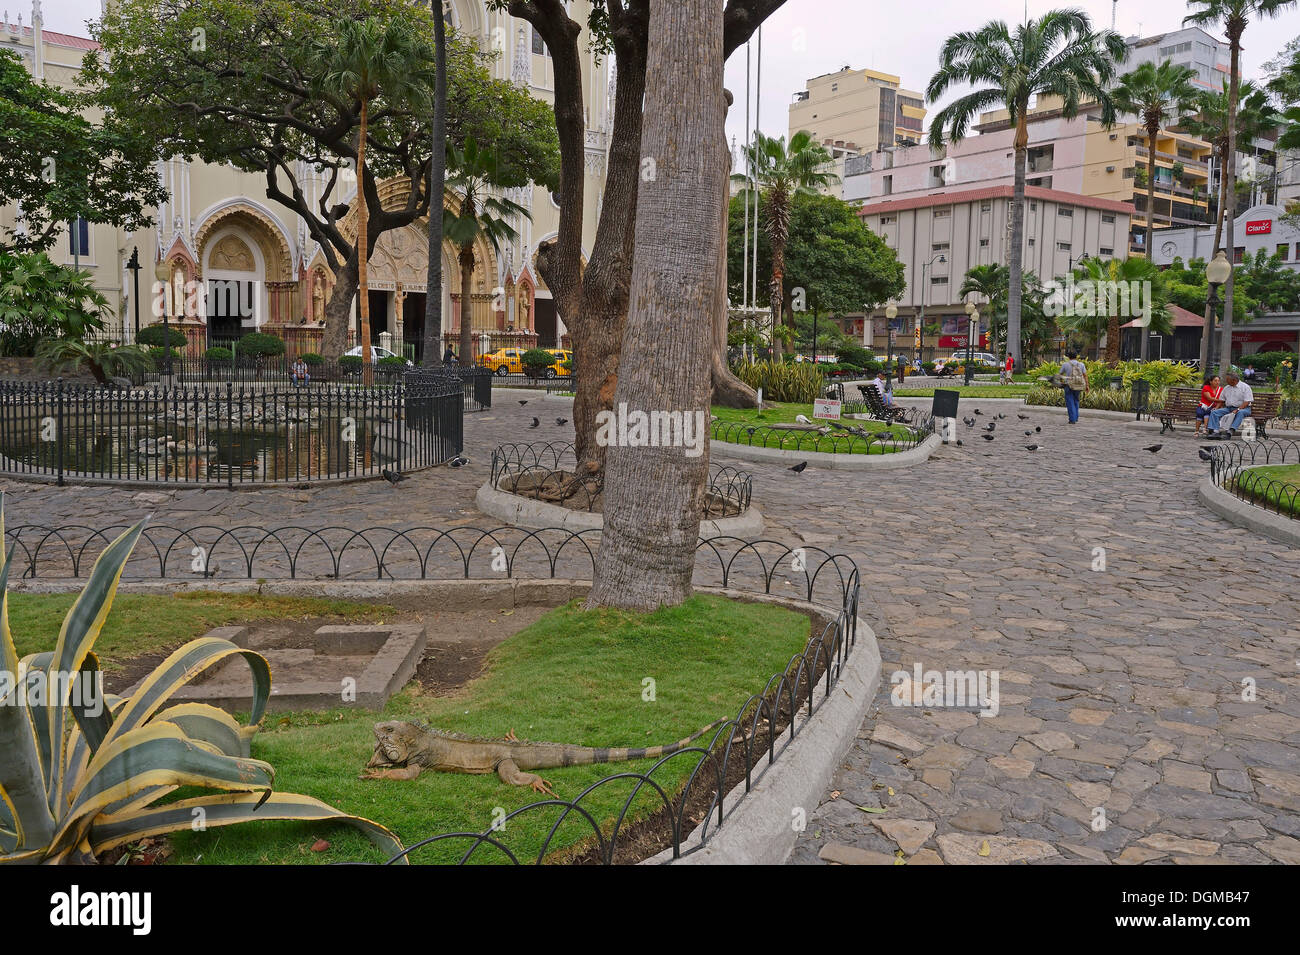 L'iguane vert (Iguana iguana terrestres), dans le Parque Seminario, Parque Bolivar ou Parque de las Iguanas, Parc Iguana, Guayaquil Banque D'Images